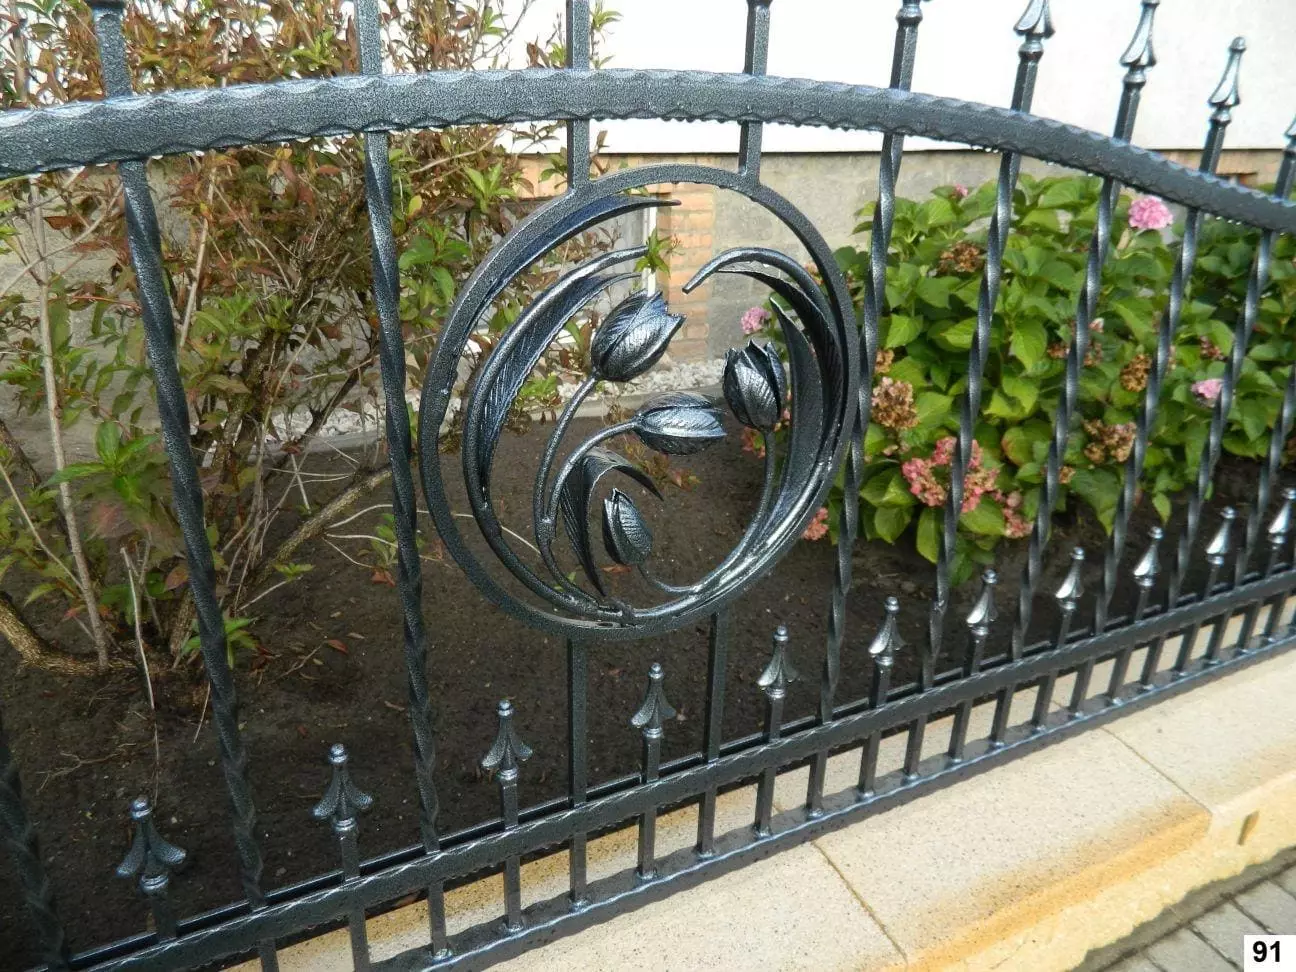 Kowalstwo artystyczne – piękne dekoracje bram i ogrodzeń